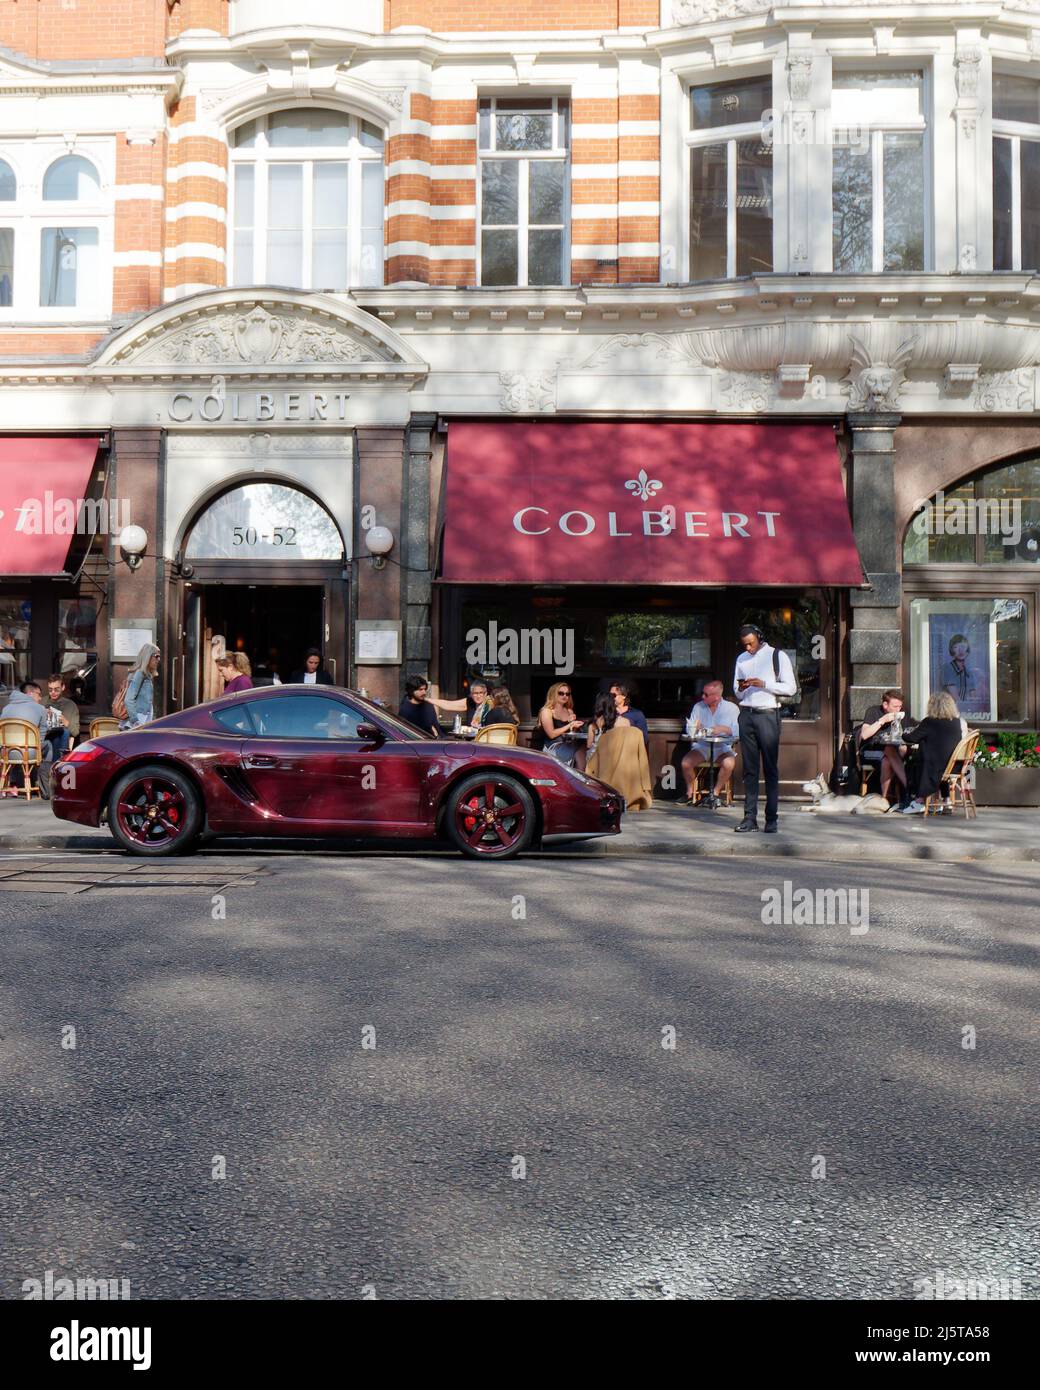 Londres, Grand Londres, Angleterre, avril 16 2022 : Porsche pourpre garée à l'extérieur de Colbert, un café restaurant français à Sloane Square avec un auvent pourpre. Banque D'Images